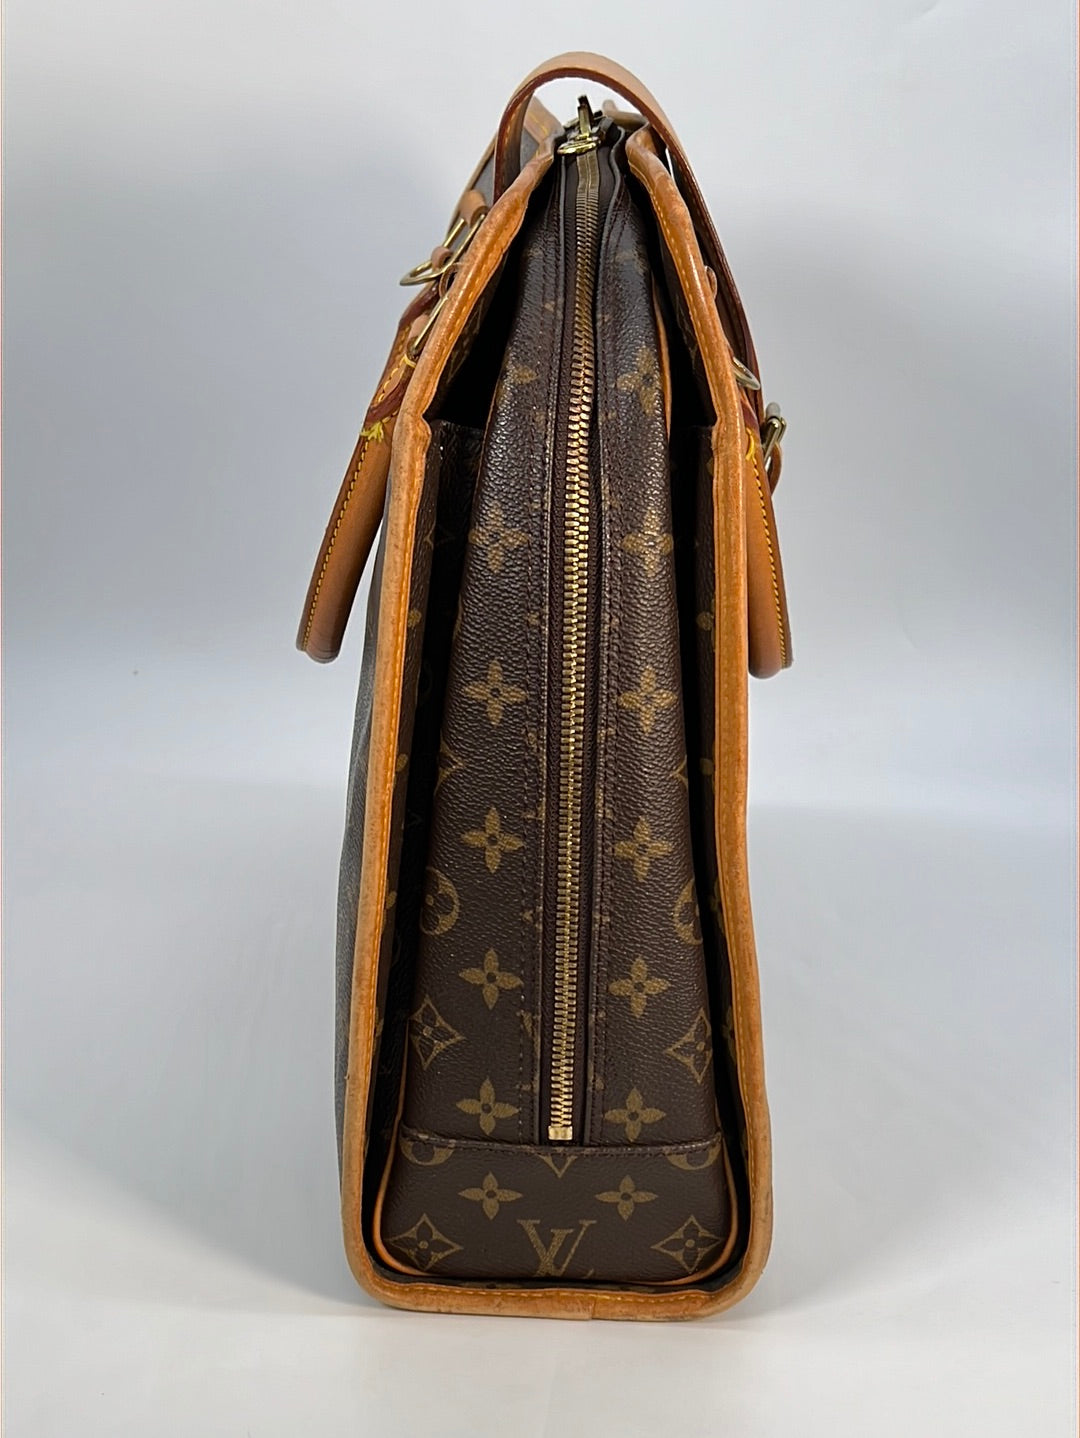 LOUIS VUITTON Business bag briefcase attache case handbag Rivoli Monog –  Japan second hand luxury bags online supplier Arigatou Share Japan